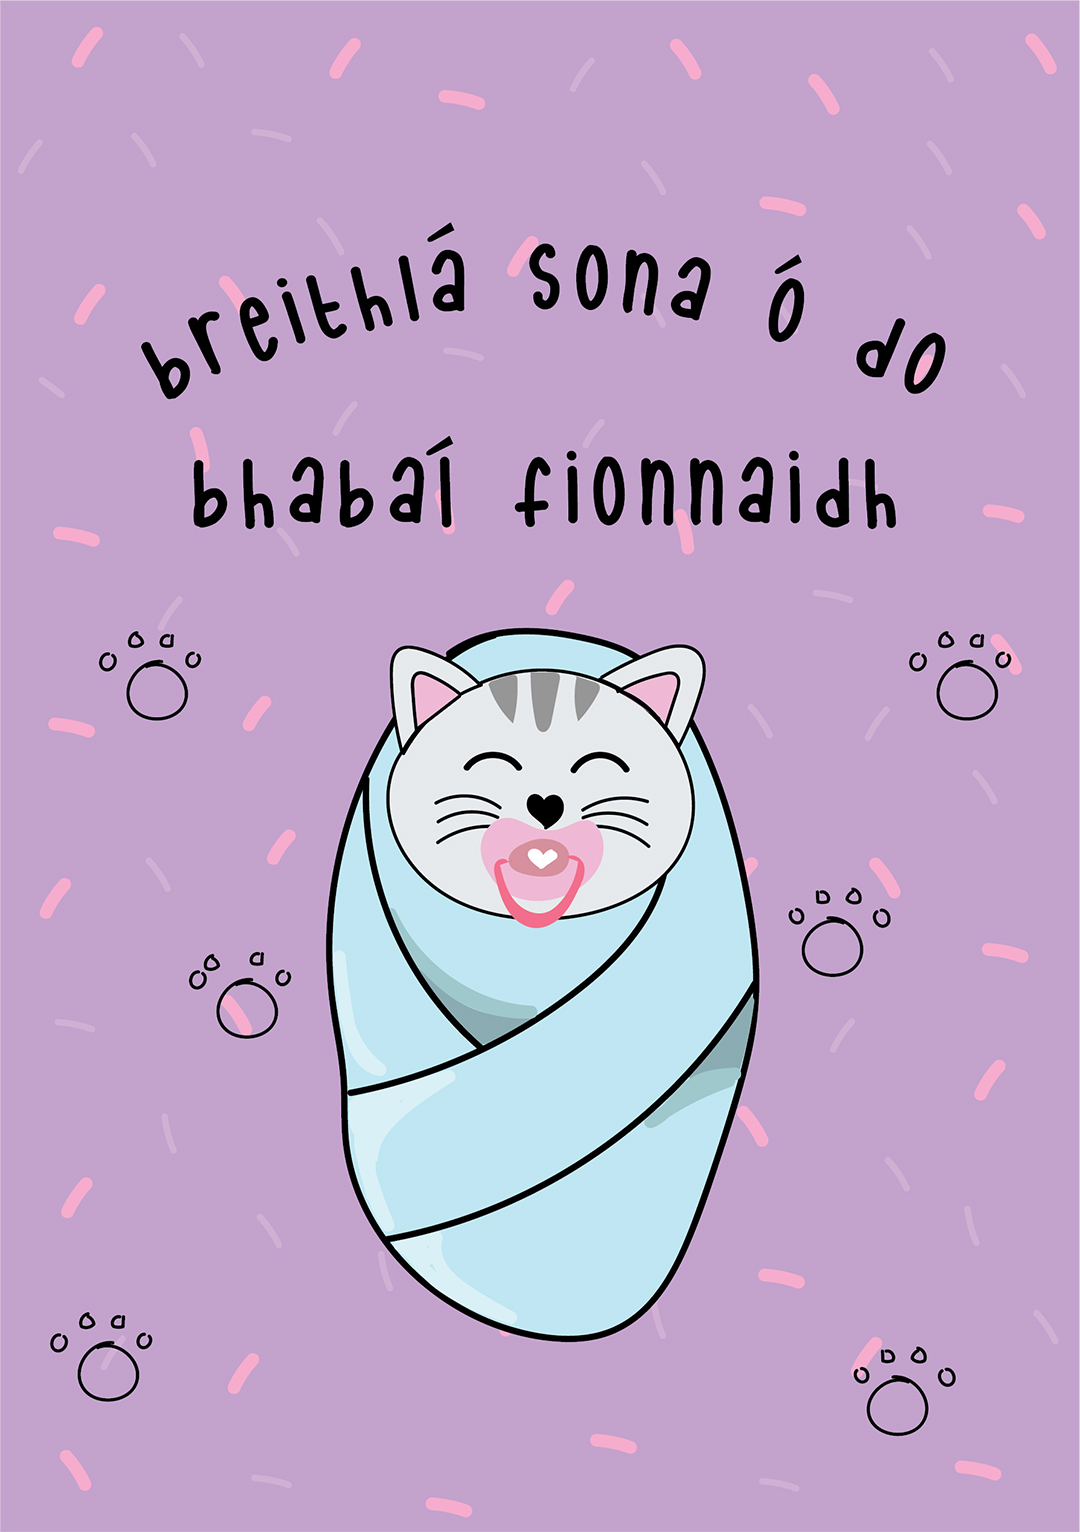 Breithlá Sona ó Do Bhabaí Fionnaidh - Cat